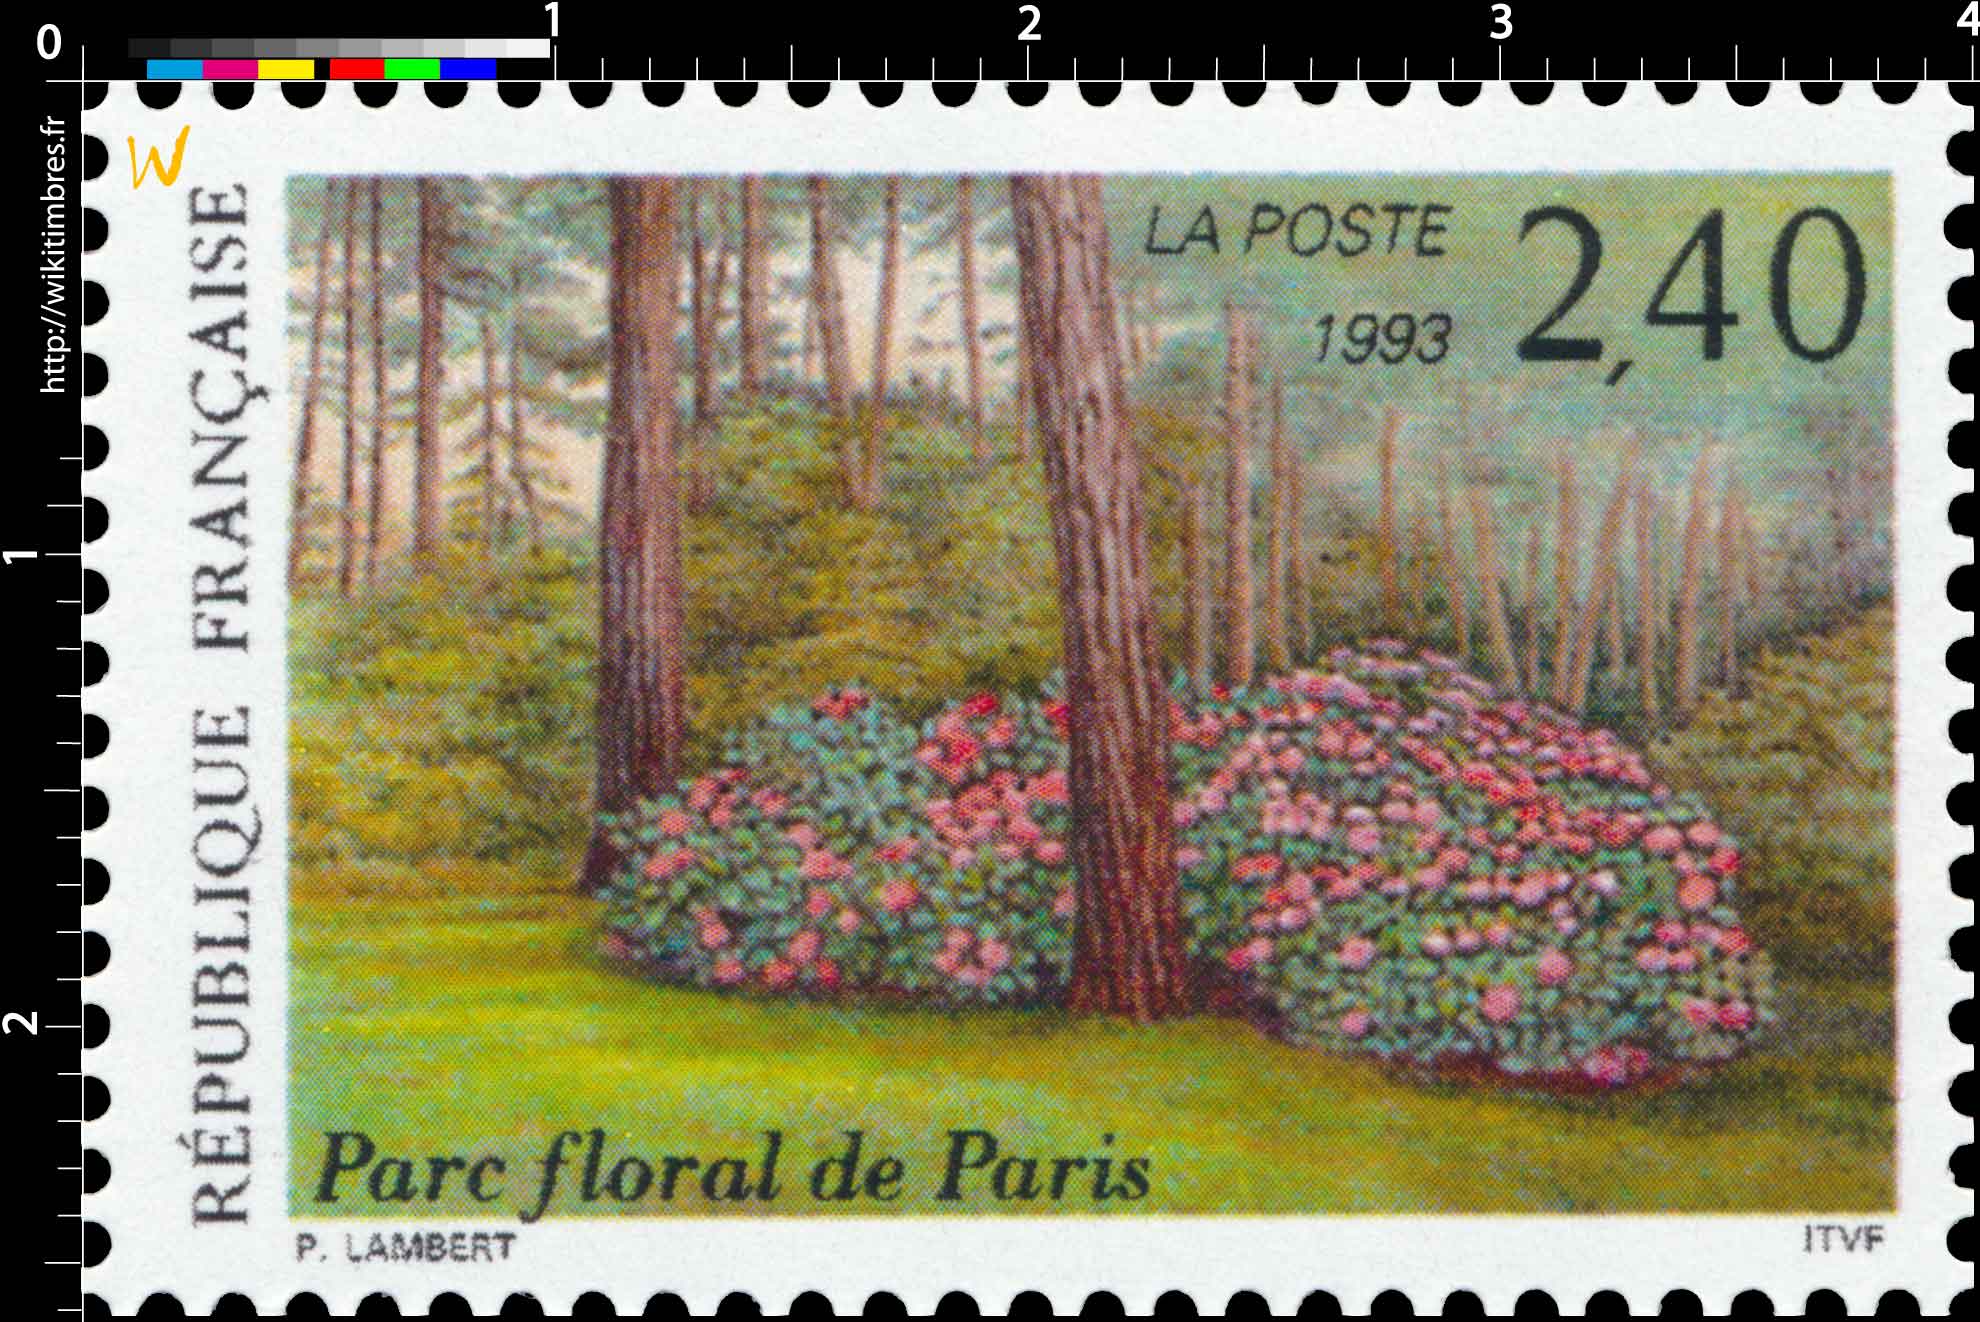 1993 Parc floral de Paris